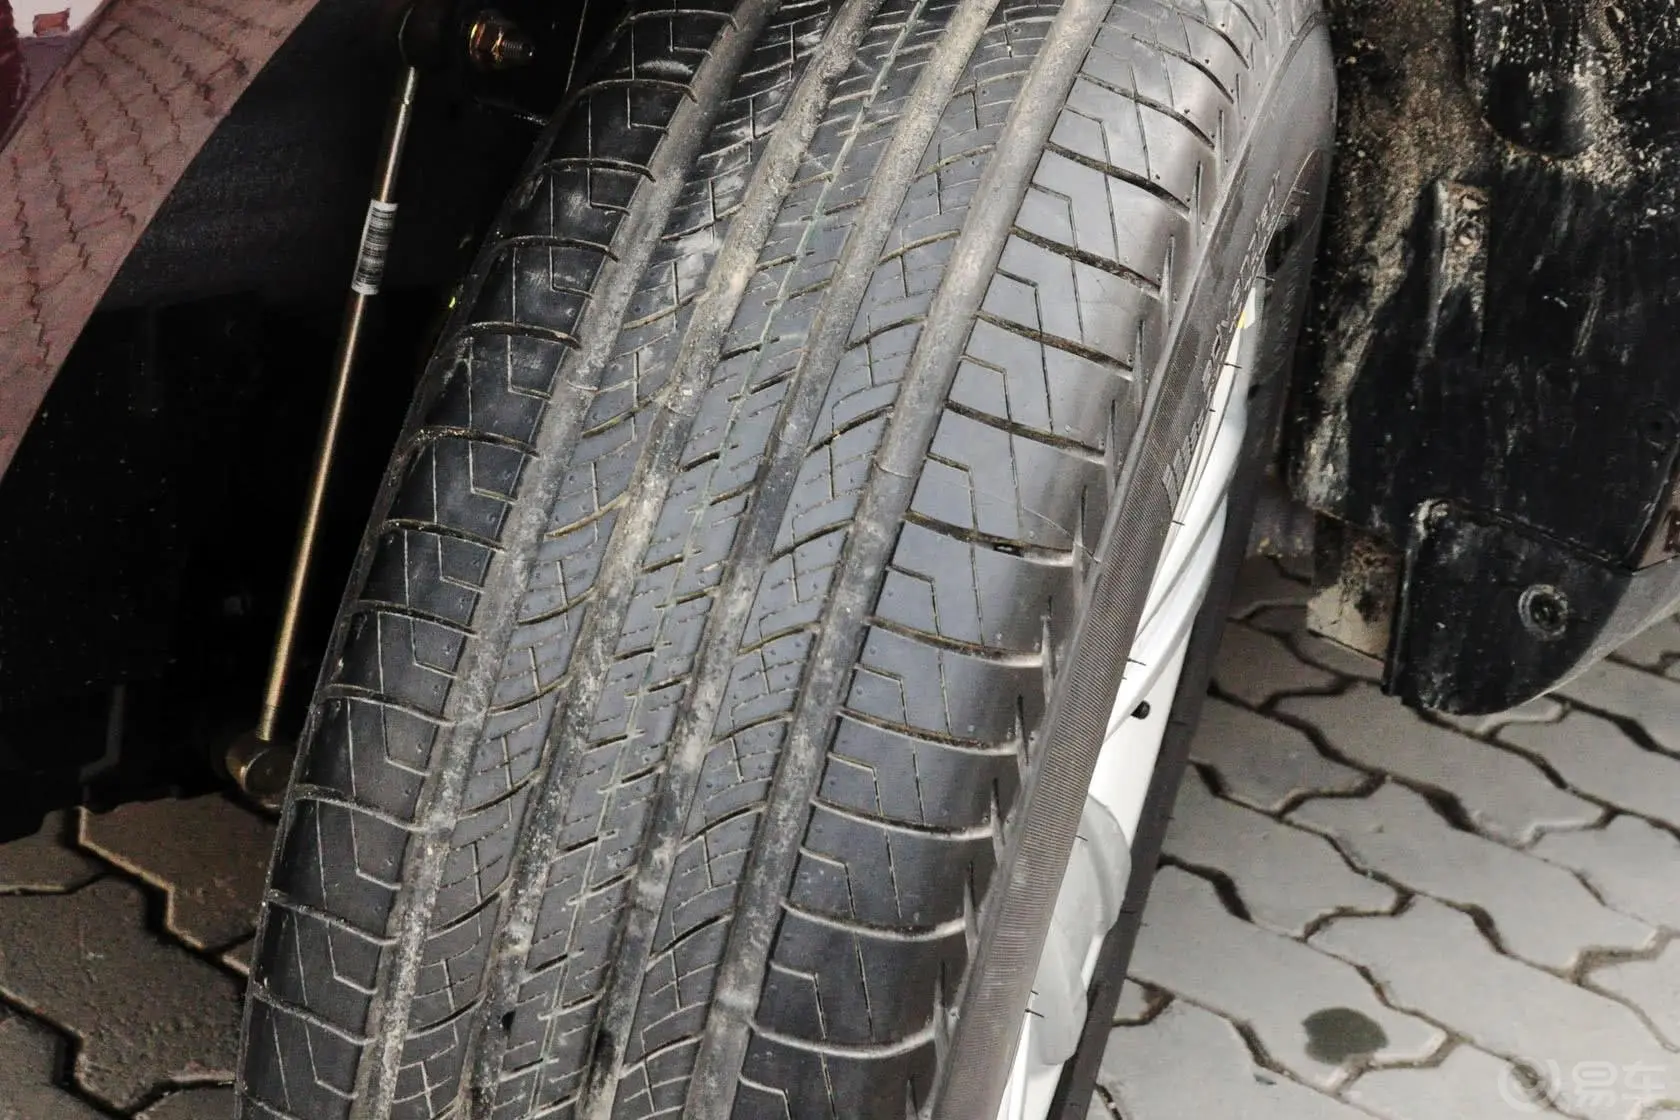 吉利GX72.0L 自动 尊贵型轮胎花纹